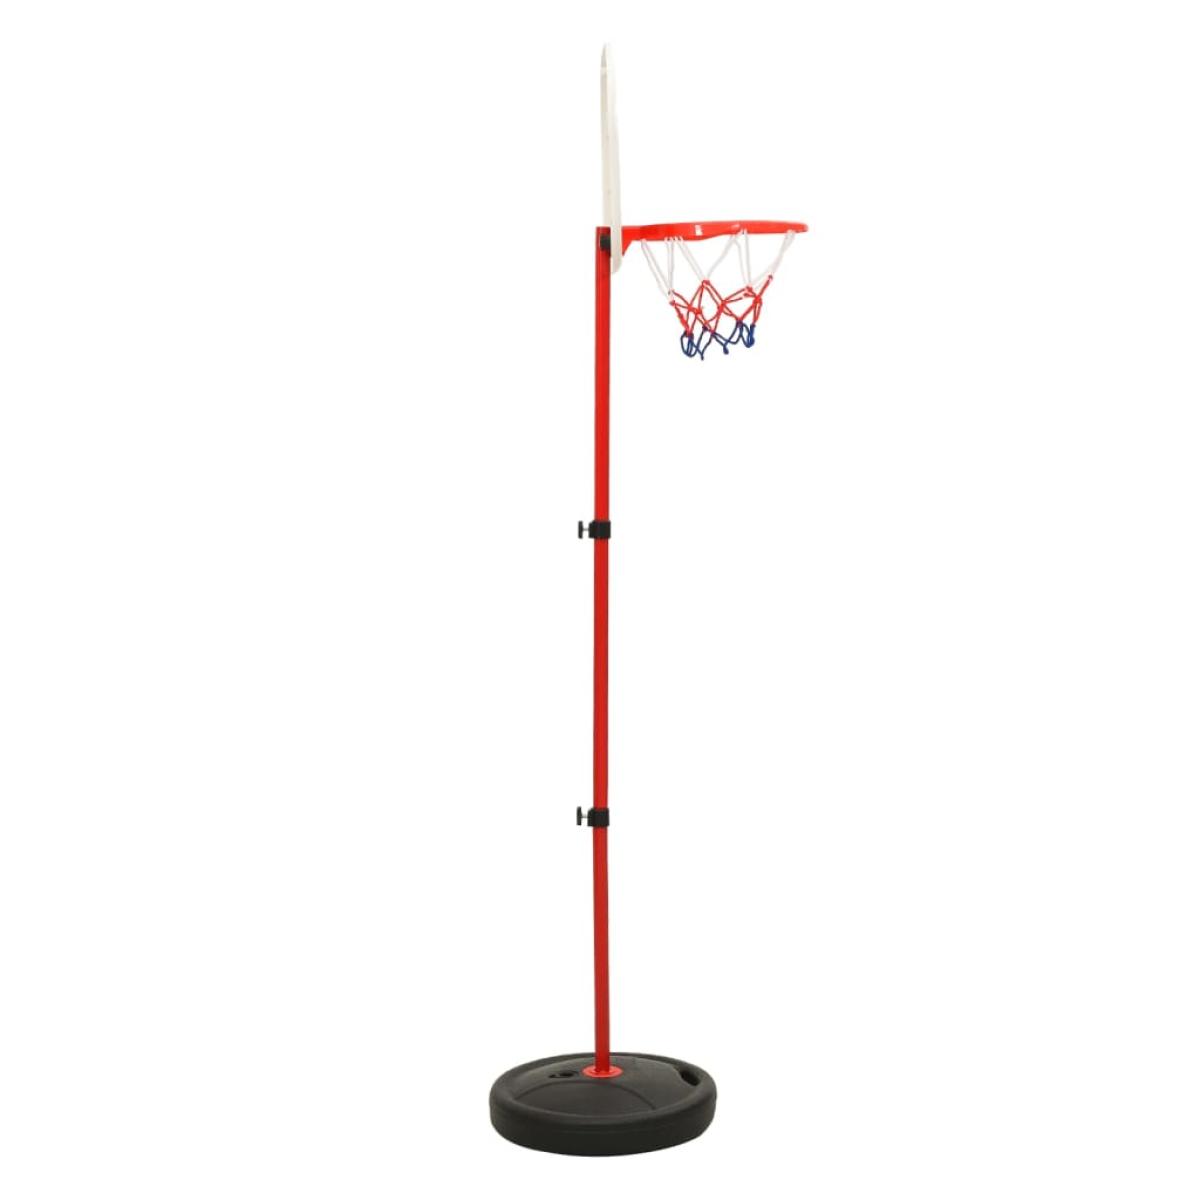 Juego de baloncesto infantil ajustable 160 cm